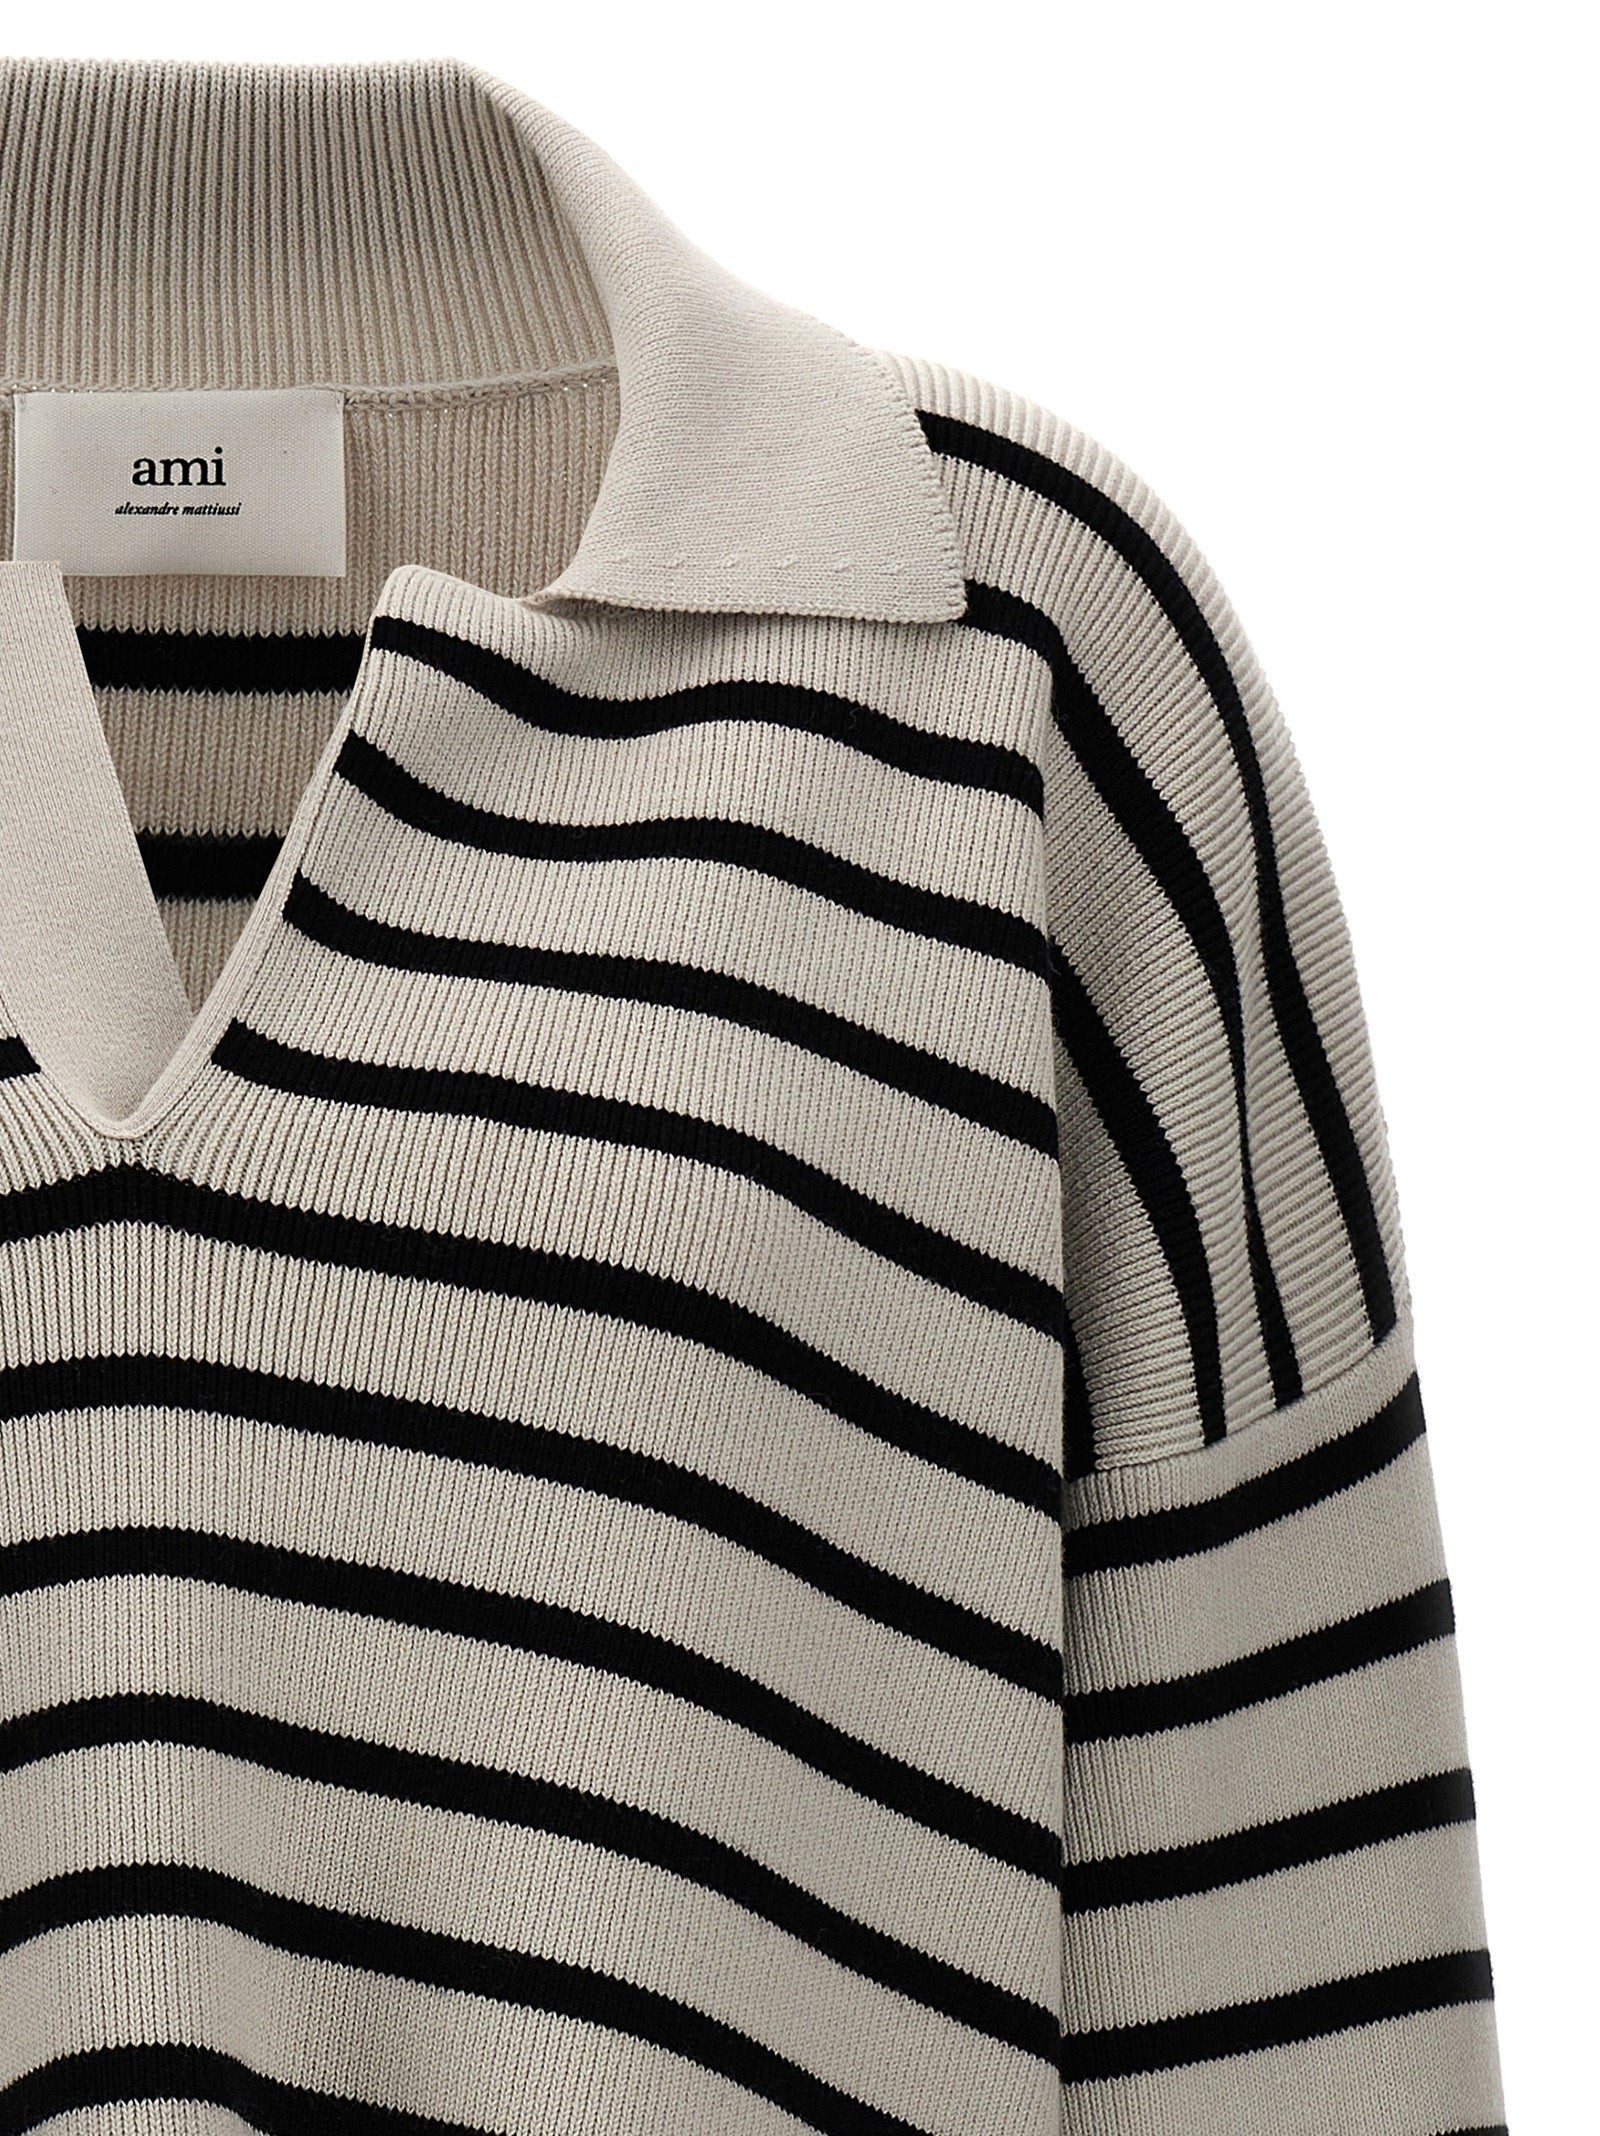 Shop Ami Alexandre Mattiussi Striped Polo Sweater Sweater, Cardigans White/black